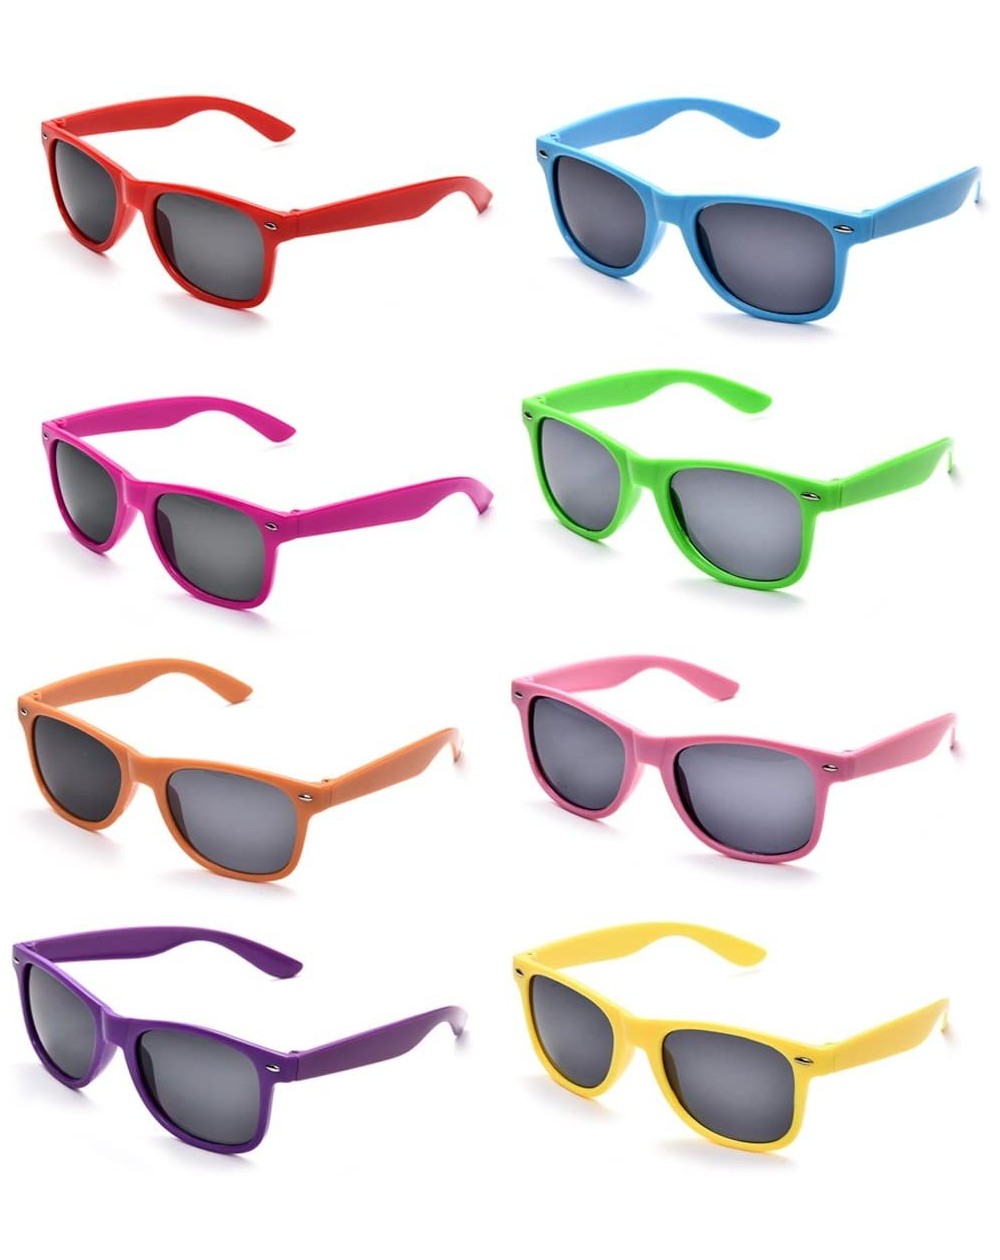 Favors Neon Colors Party Favor Supplies Unisex Sunglasses Pack of 8 (Multicolor) - Multicolor - CW186D2XTNE $14.53